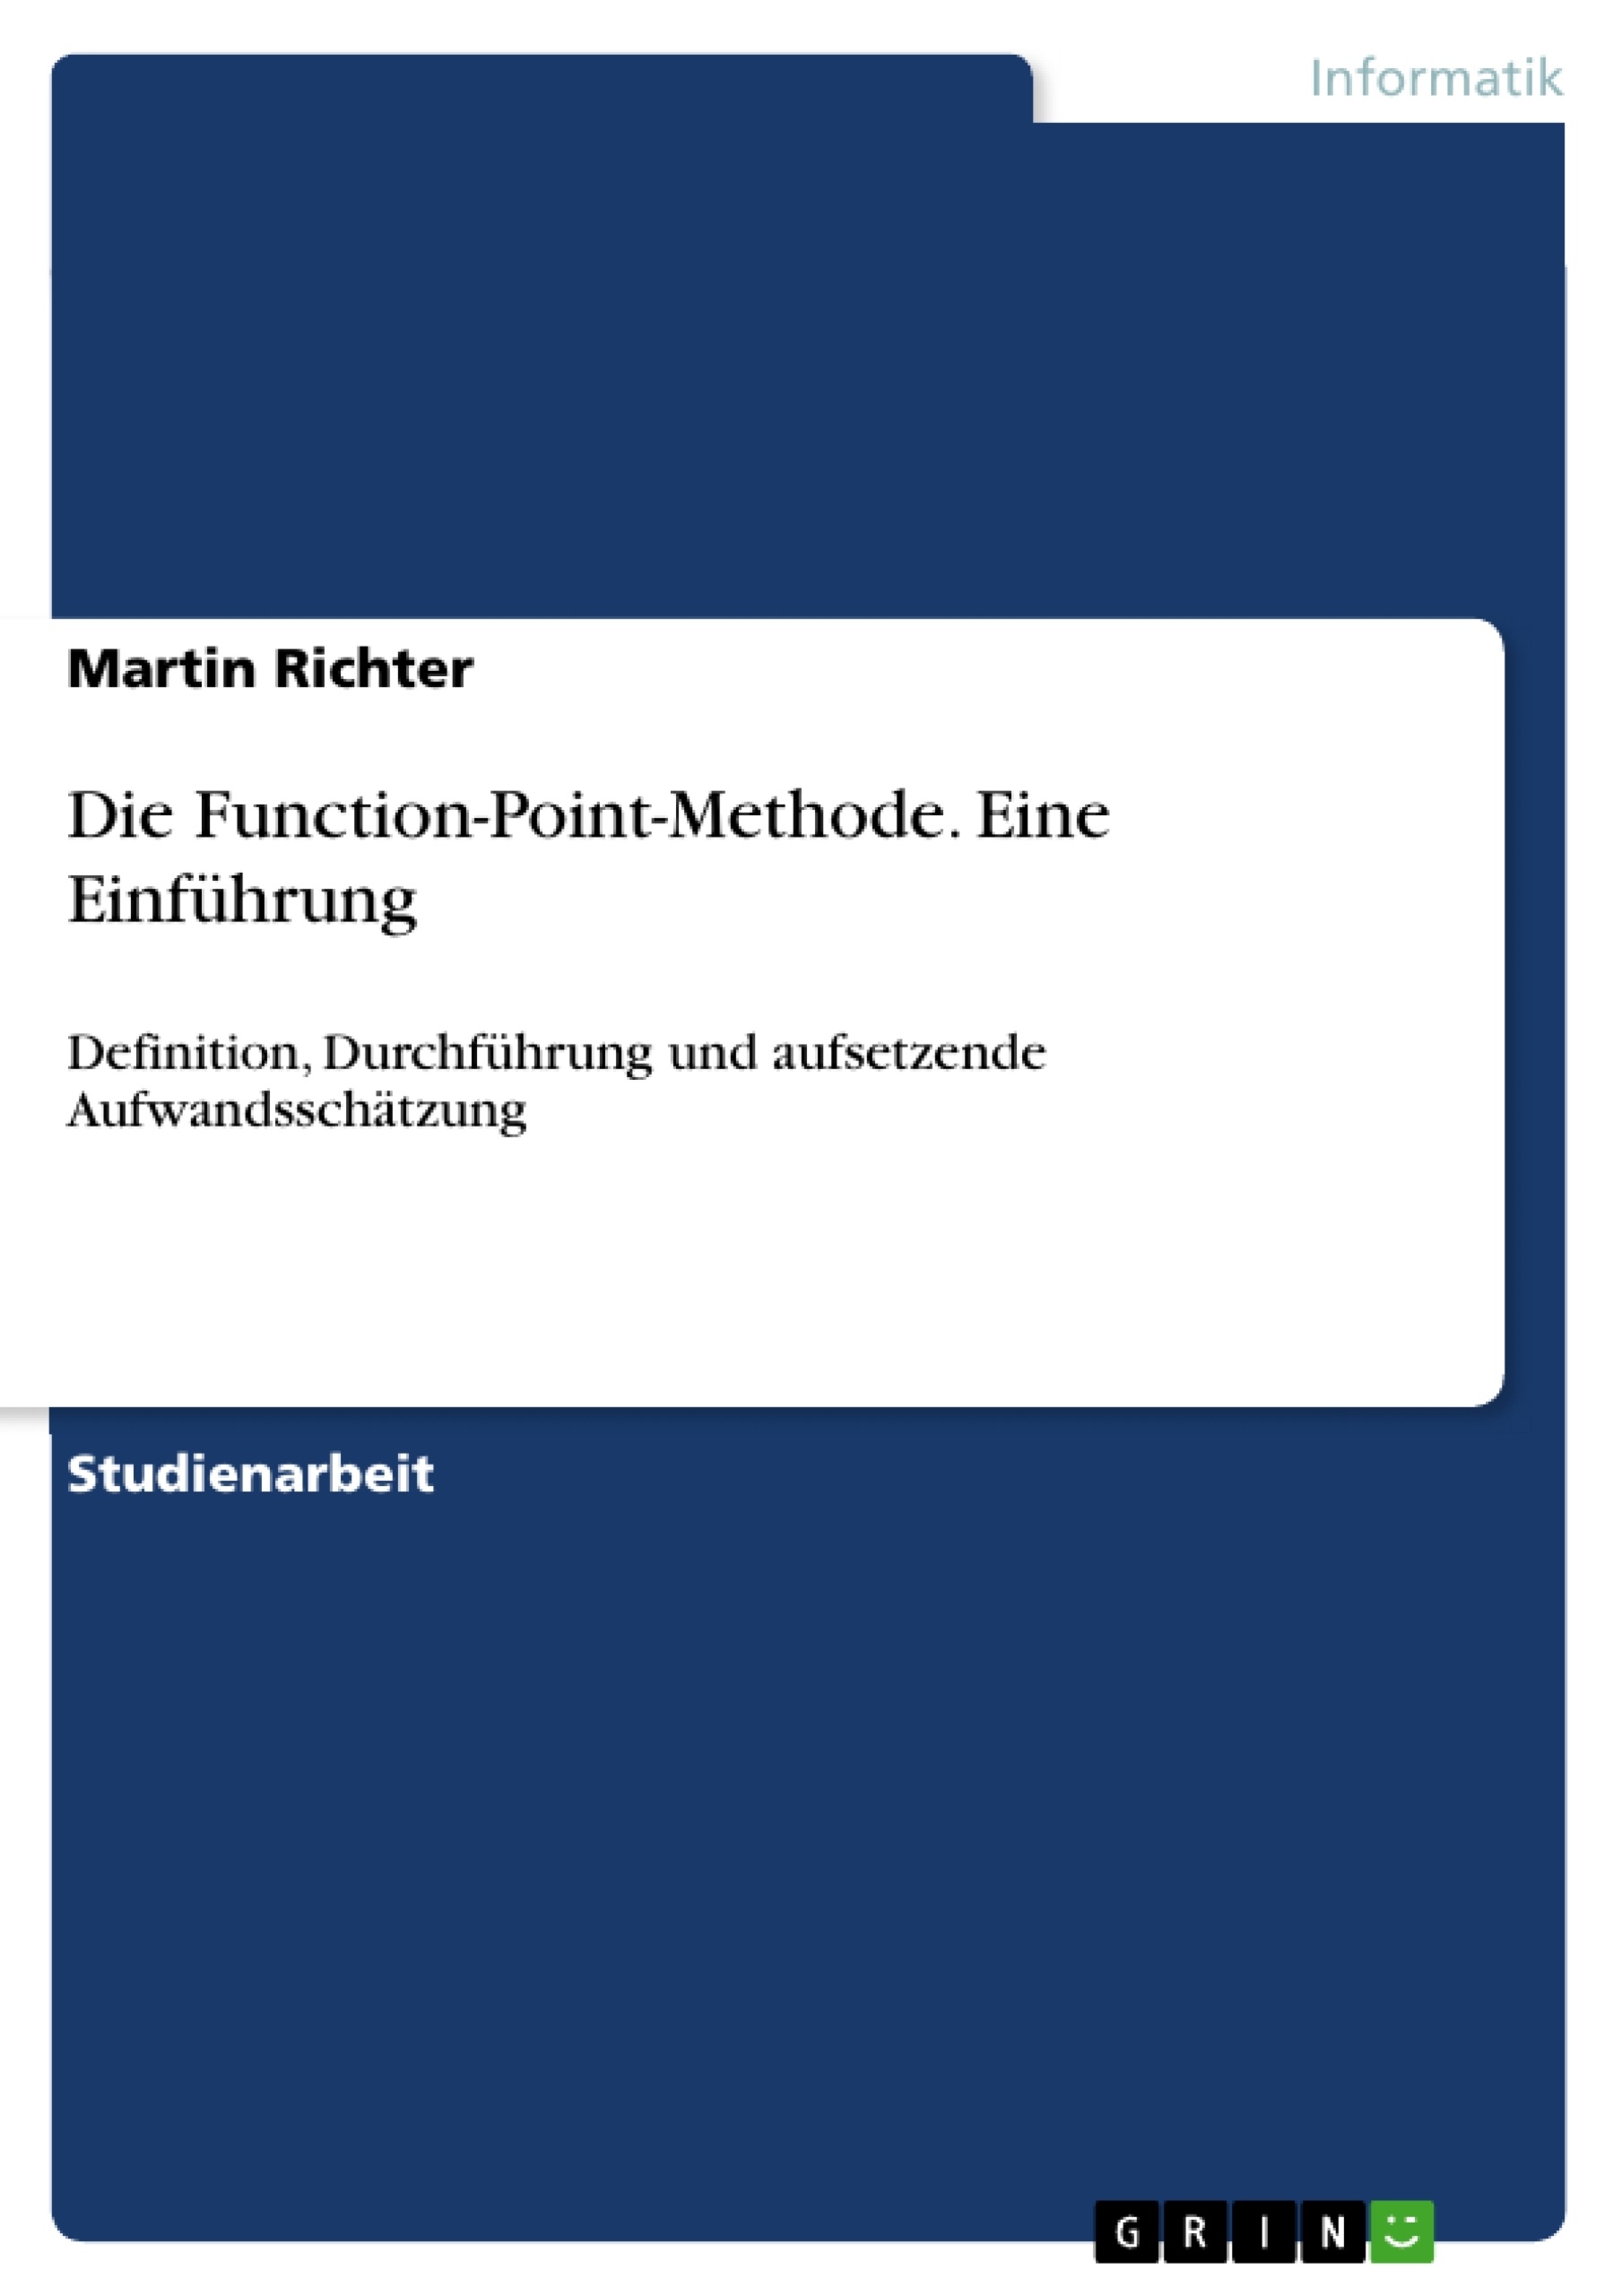 Title: Die Function-Point-Methode. Eine Einführung